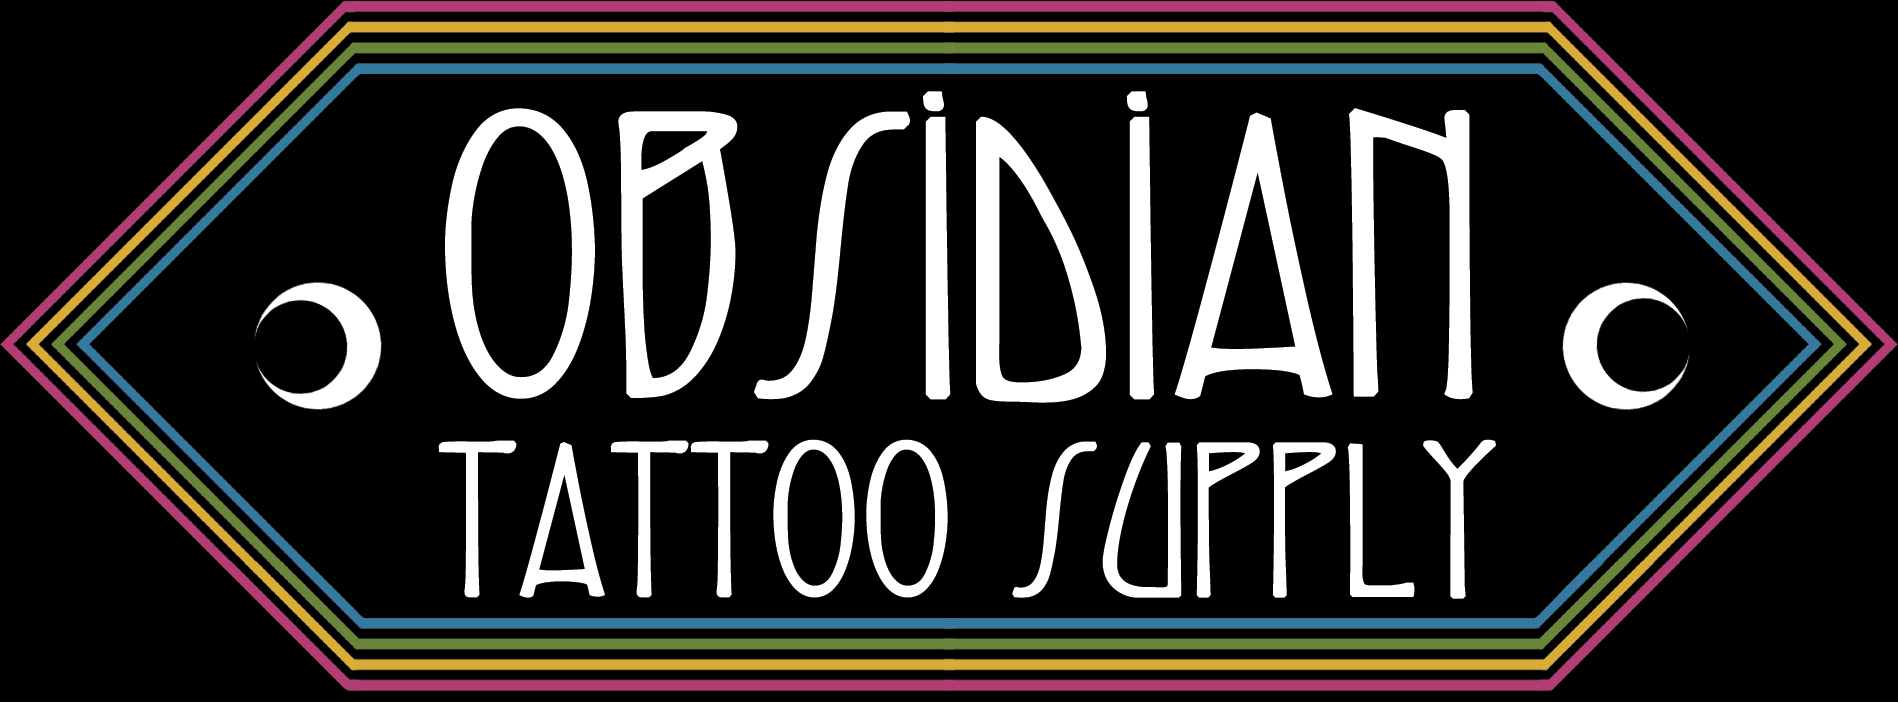 Obsidian Tattoo Supply